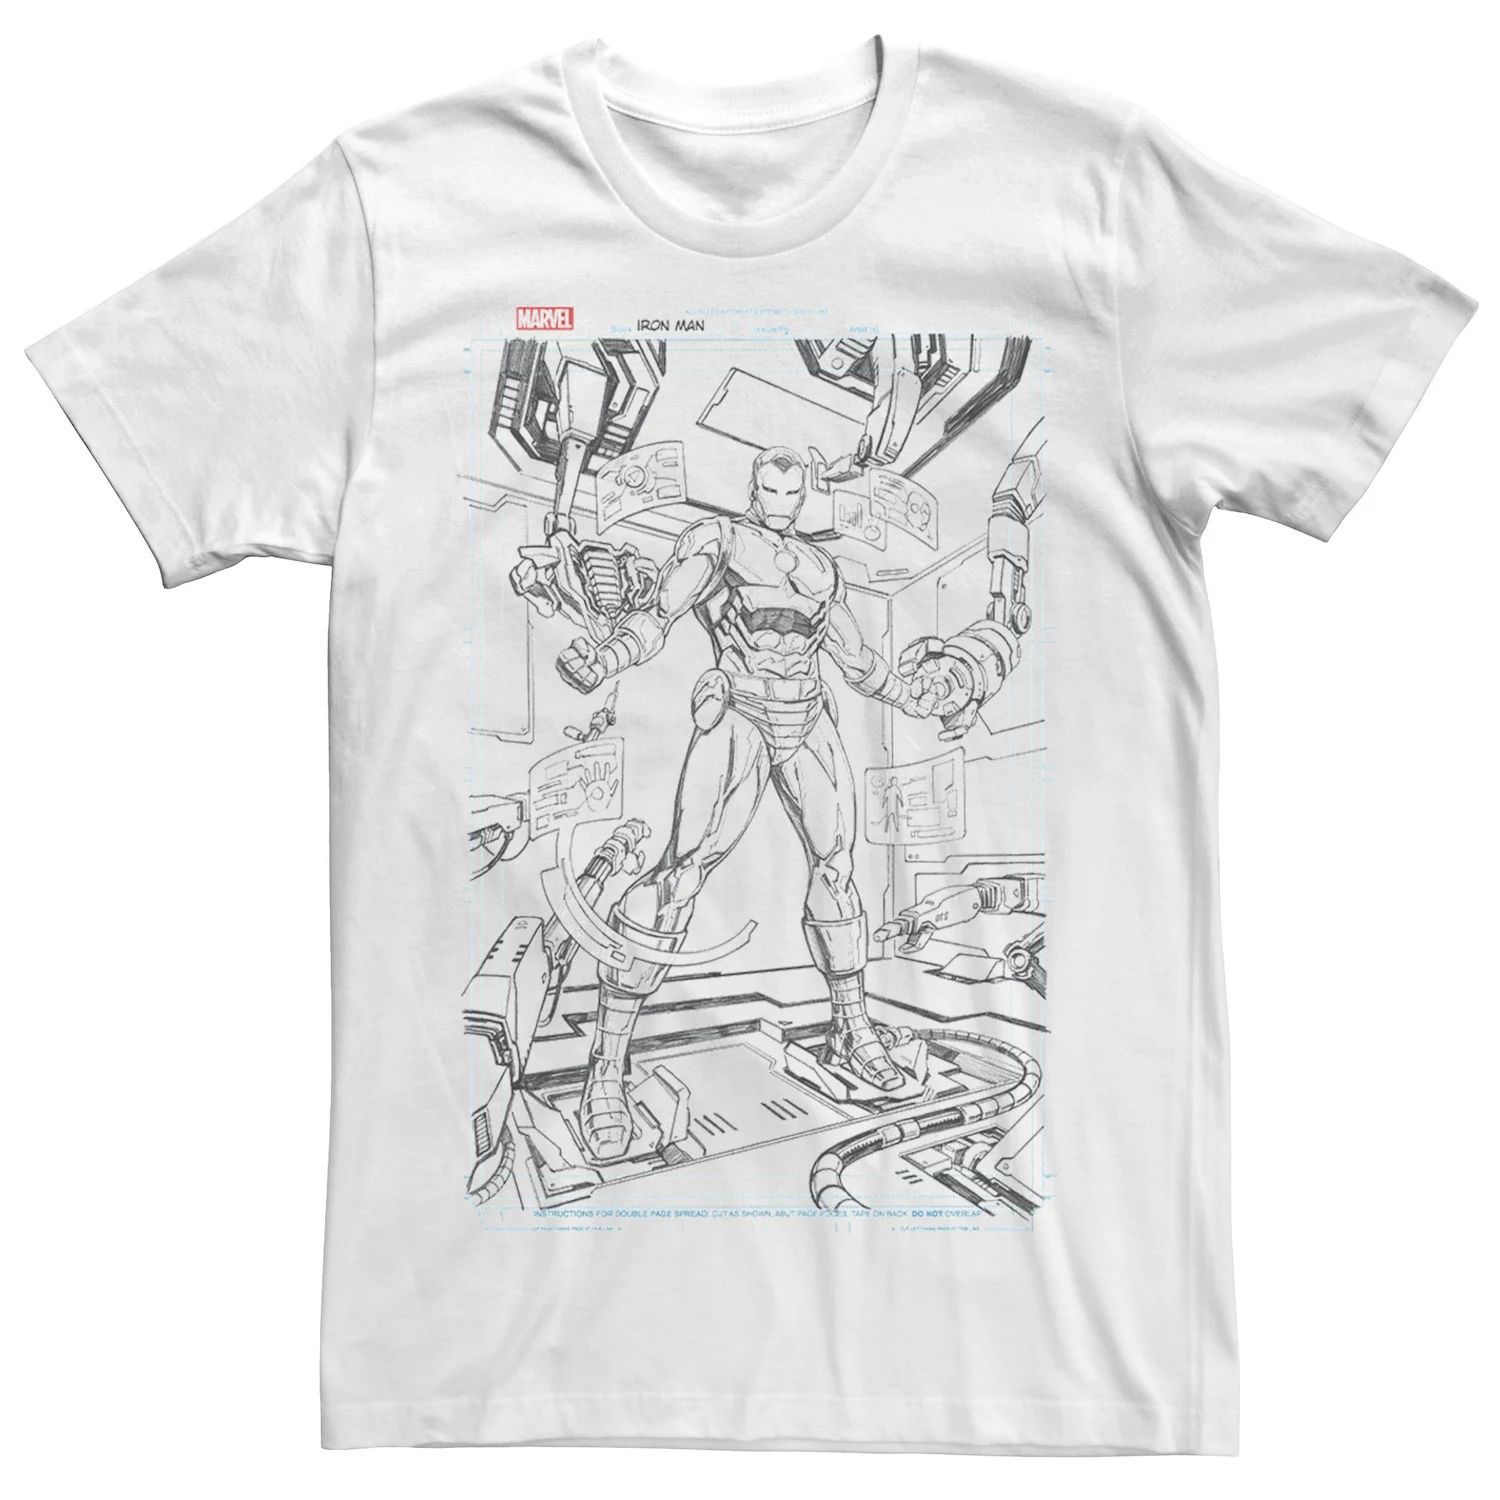 Мужская футболка с рисунком и обложкой комикса «Железный человек» Marvel мужская черная футболка с обложкой комикса marvel prince namor черный